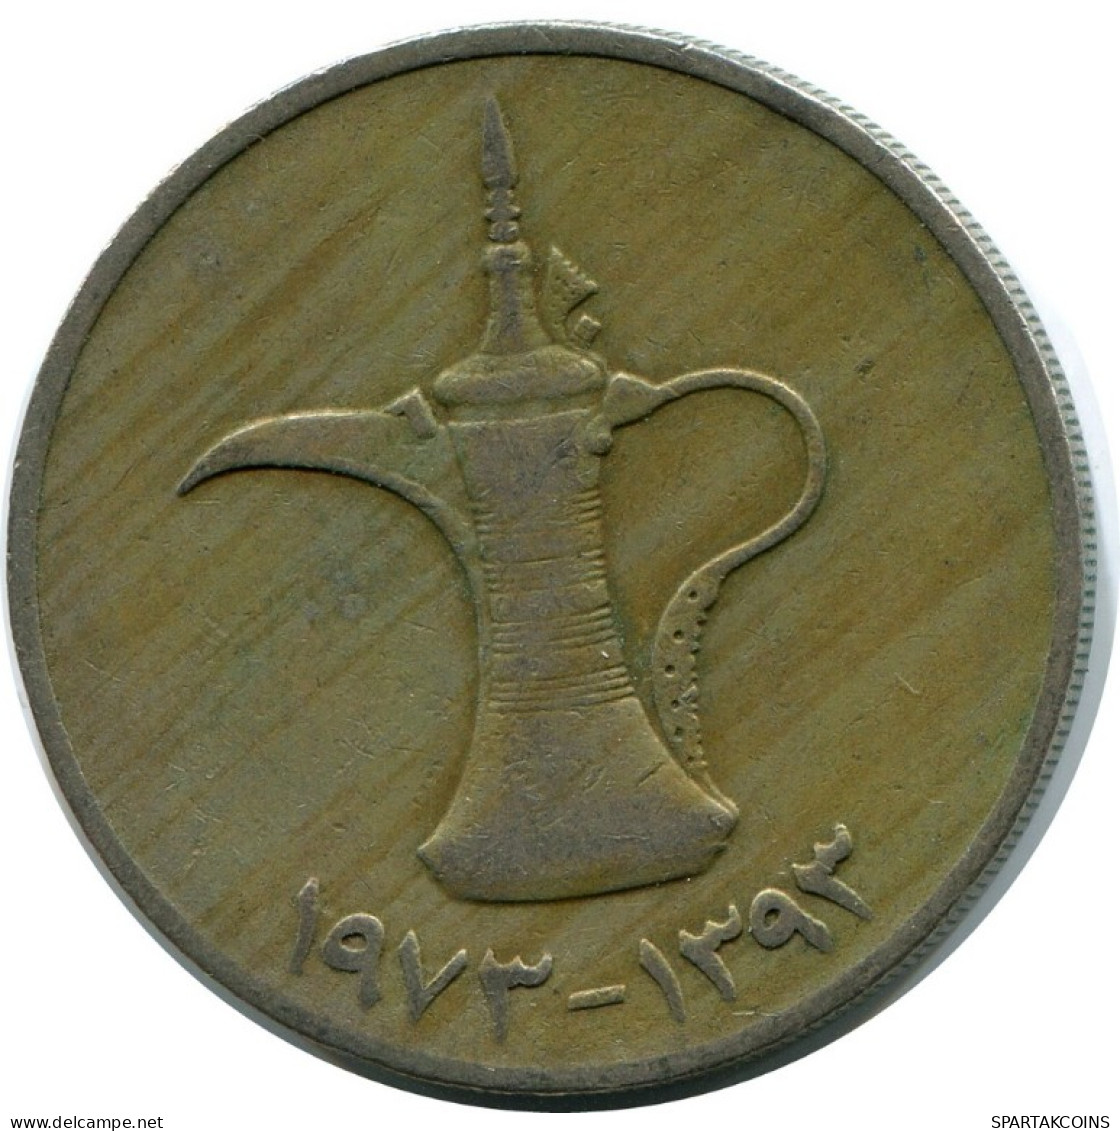 1 DIRHAM 1973 UAE UNITED ARAB EMIRATES Islámico Moneda #AH986.E.A - Ver. Arab. Emirate